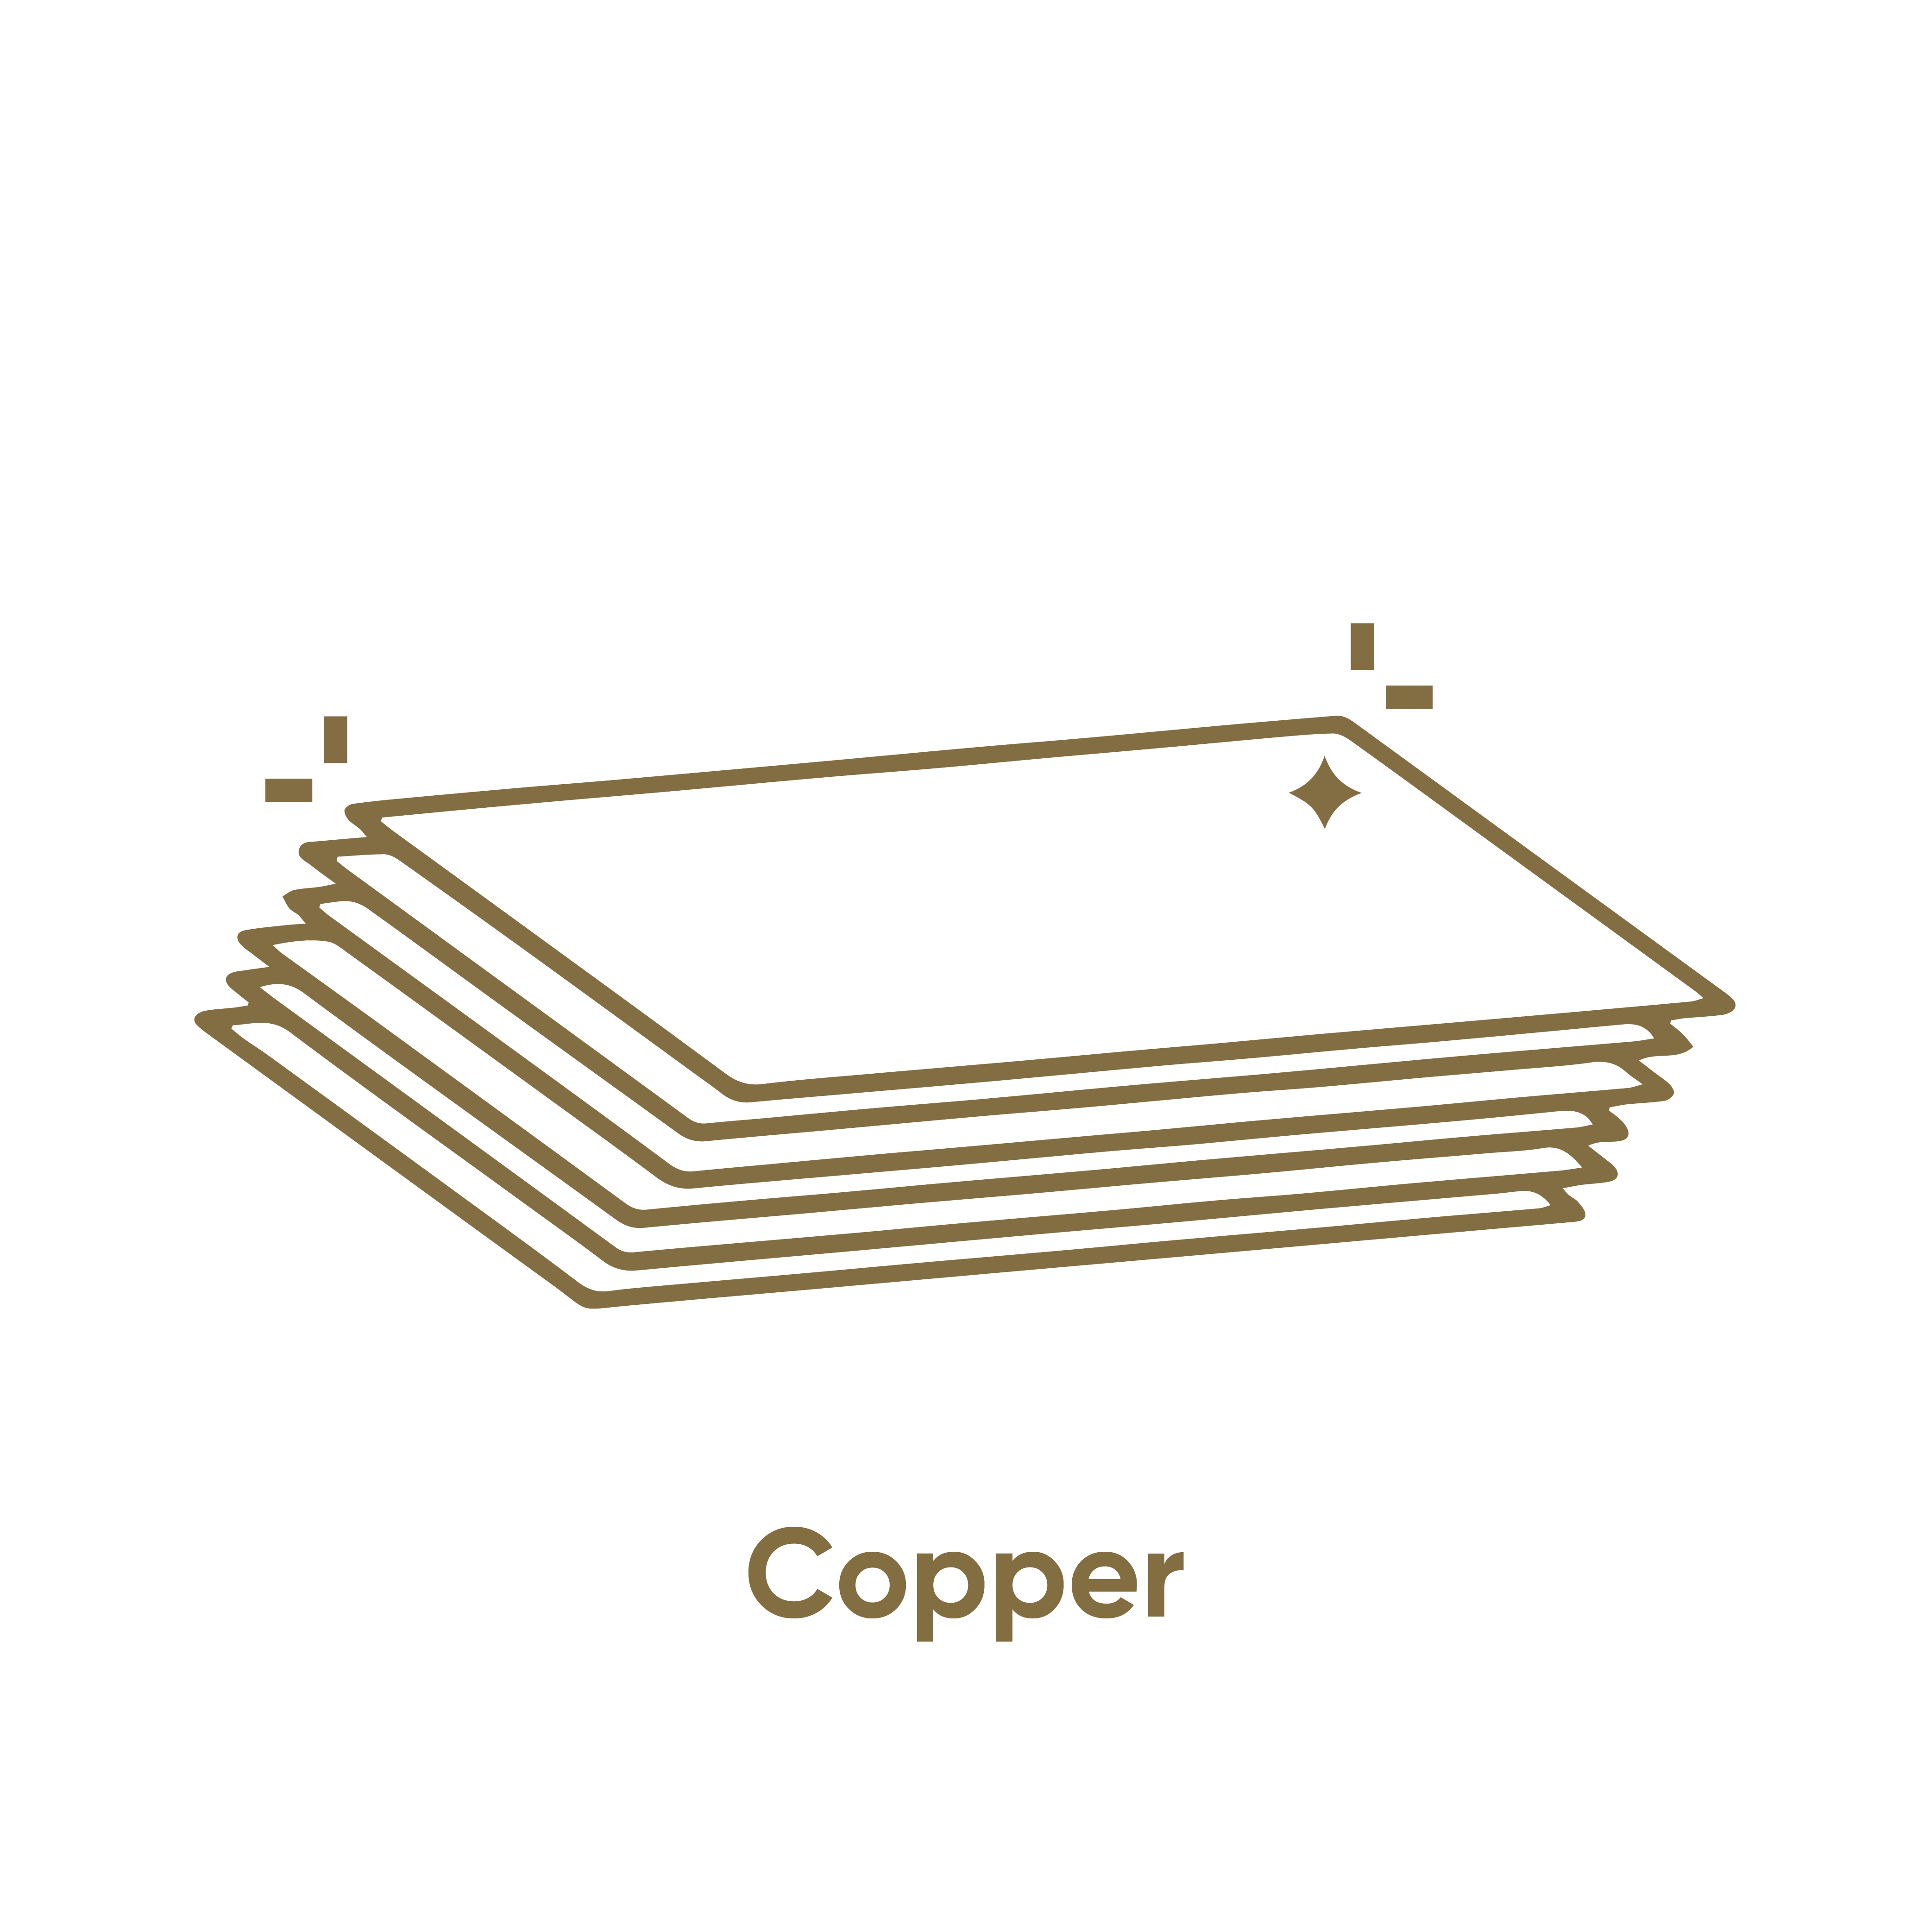 15,000 tonnes of copper